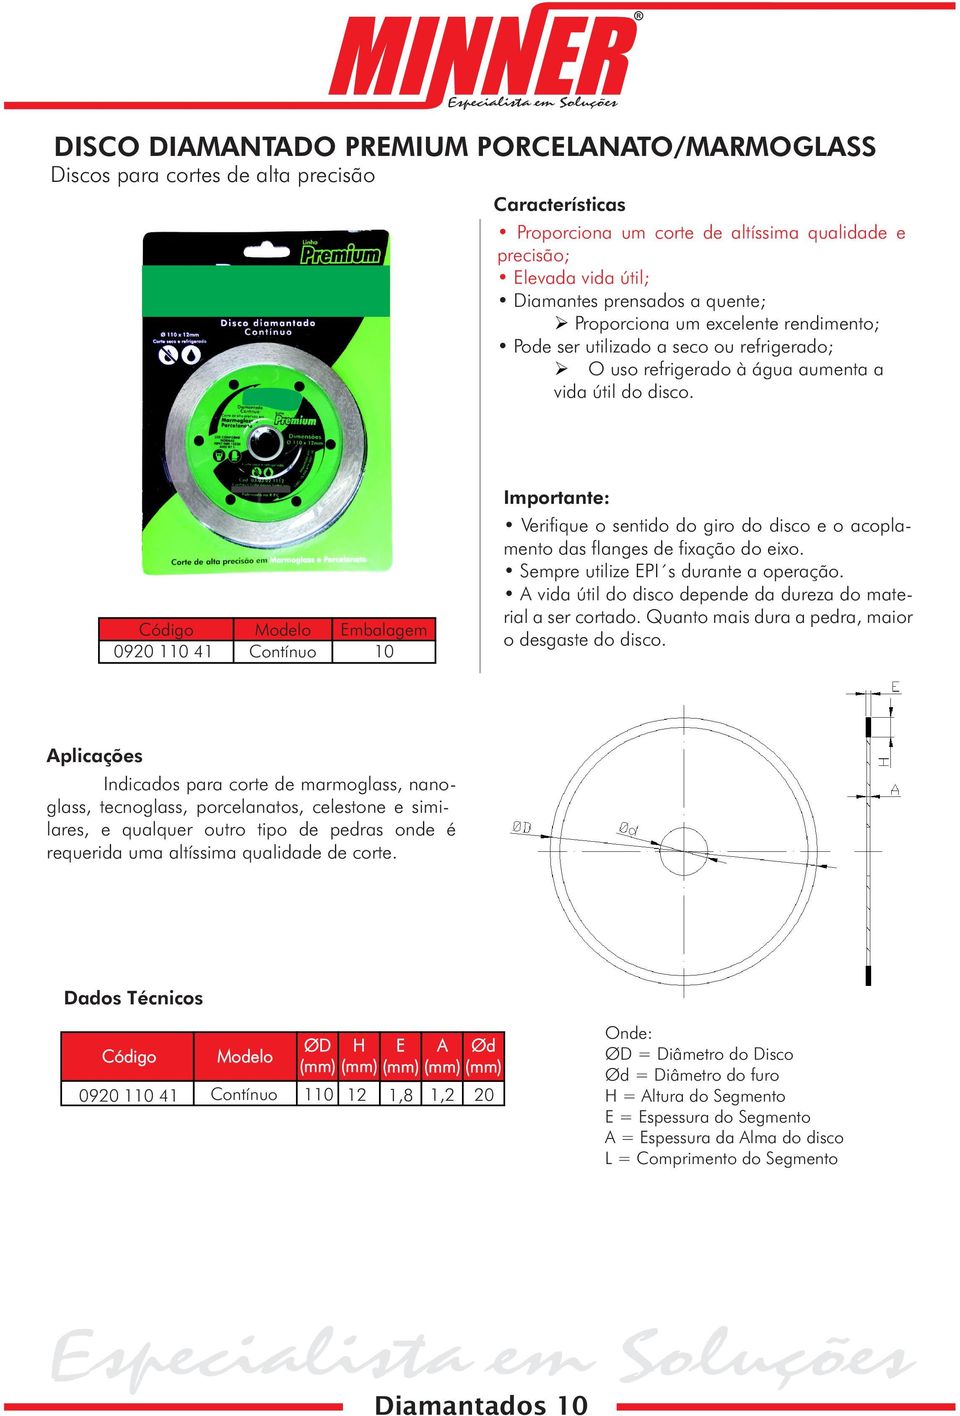 Modelo Embalagem 0920 110 41 Contínuo 10 Importante: Verifique o sentido do giro do disco e o acoplamento das flanges de fixação do eixo. Sempre utilize EPI s durante a operação.